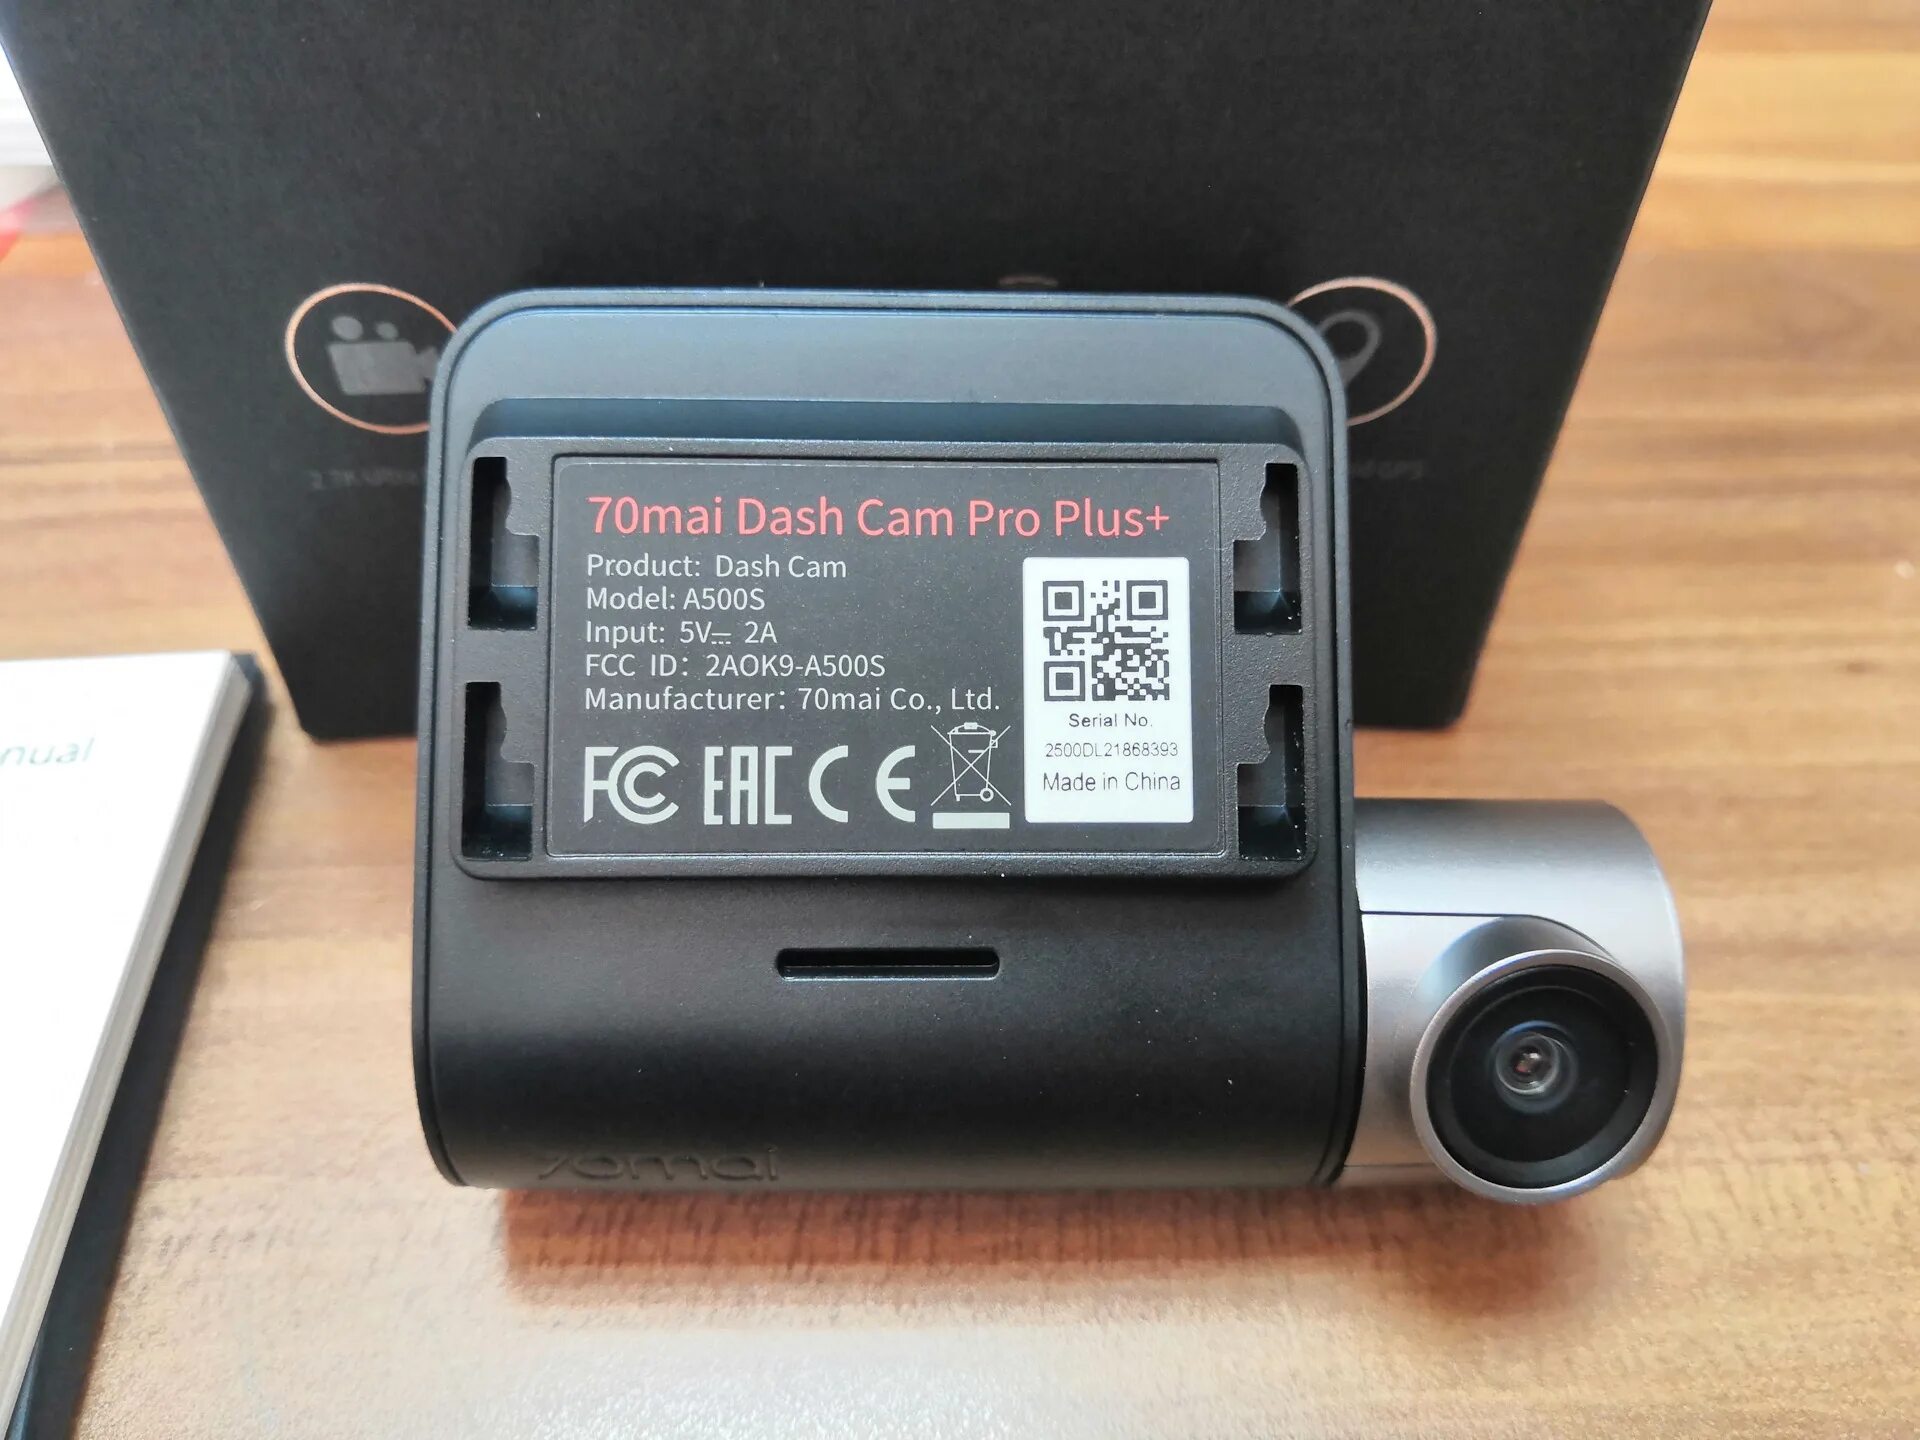 A500s видеорегистратор купить. Видеорегистратор 70mai Dash cam Pro Plus+. Видеорегистратор 70mai Dash cam Pro Plus a500s. Регистратор 70 mai Dash cam Pro Plus. Видеорегистратор 70mai Dash cam Pro Plus+ a500s, GPS, ГЛОНАСС, черный.